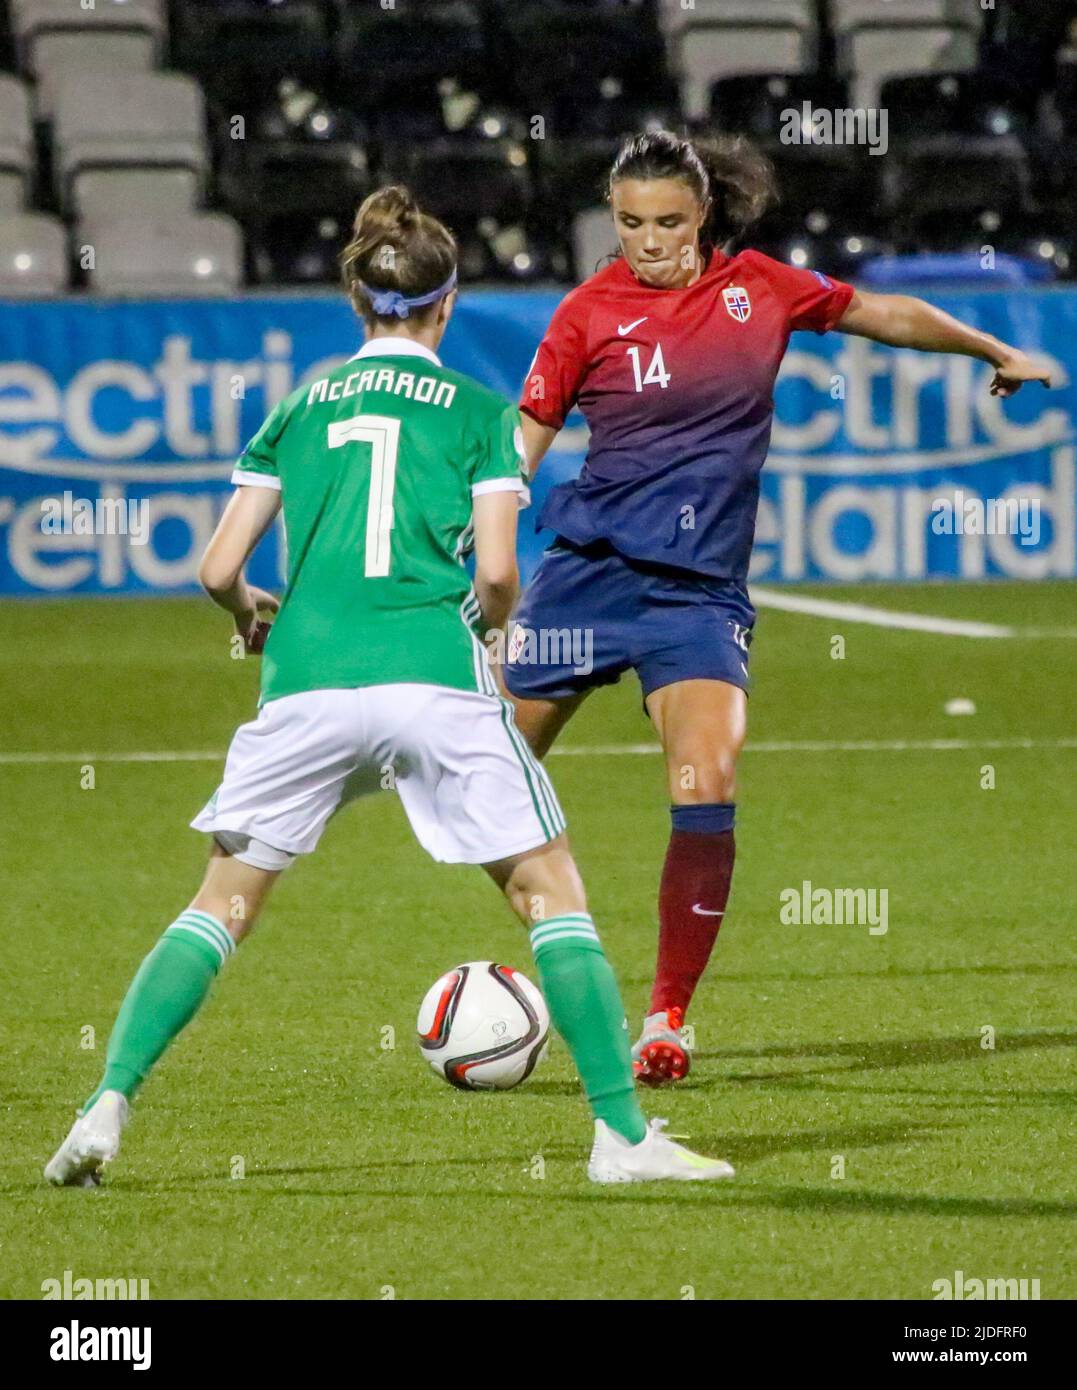 Campeonato Europeo Femenino de la UEFA 2021. 30 de agosto de 2019. Irlanda del Norte 0 Noruega 6 en Seaview, Belfast. Noruega Jugador internacional de fútbol Ingrid Syrstad Engen Noruega (14) . Foto de stock